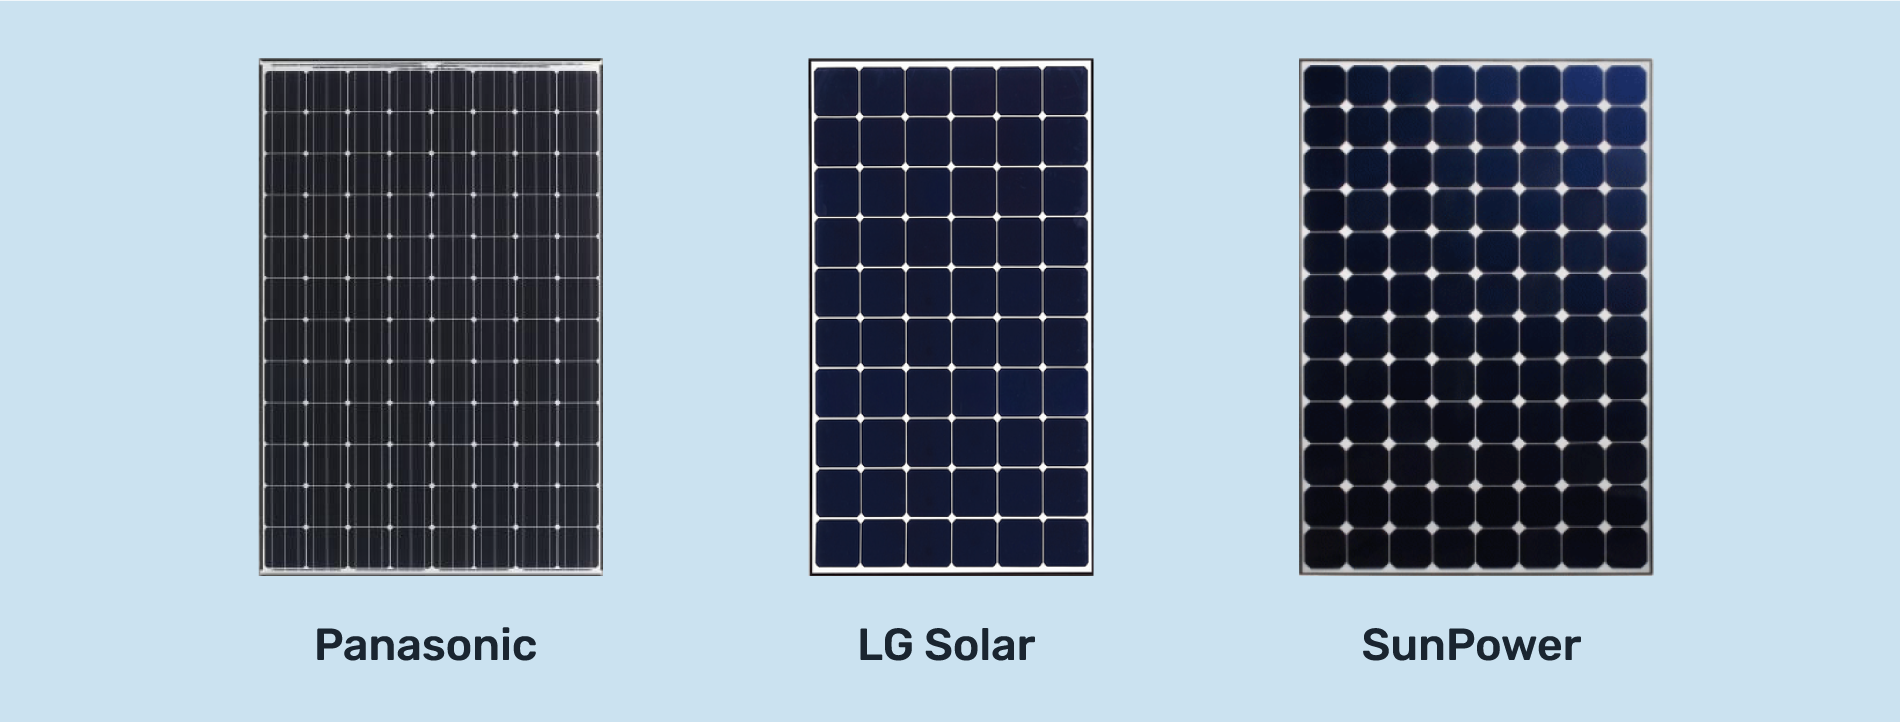 premium solar panels, panasonic, lg, and sunpower